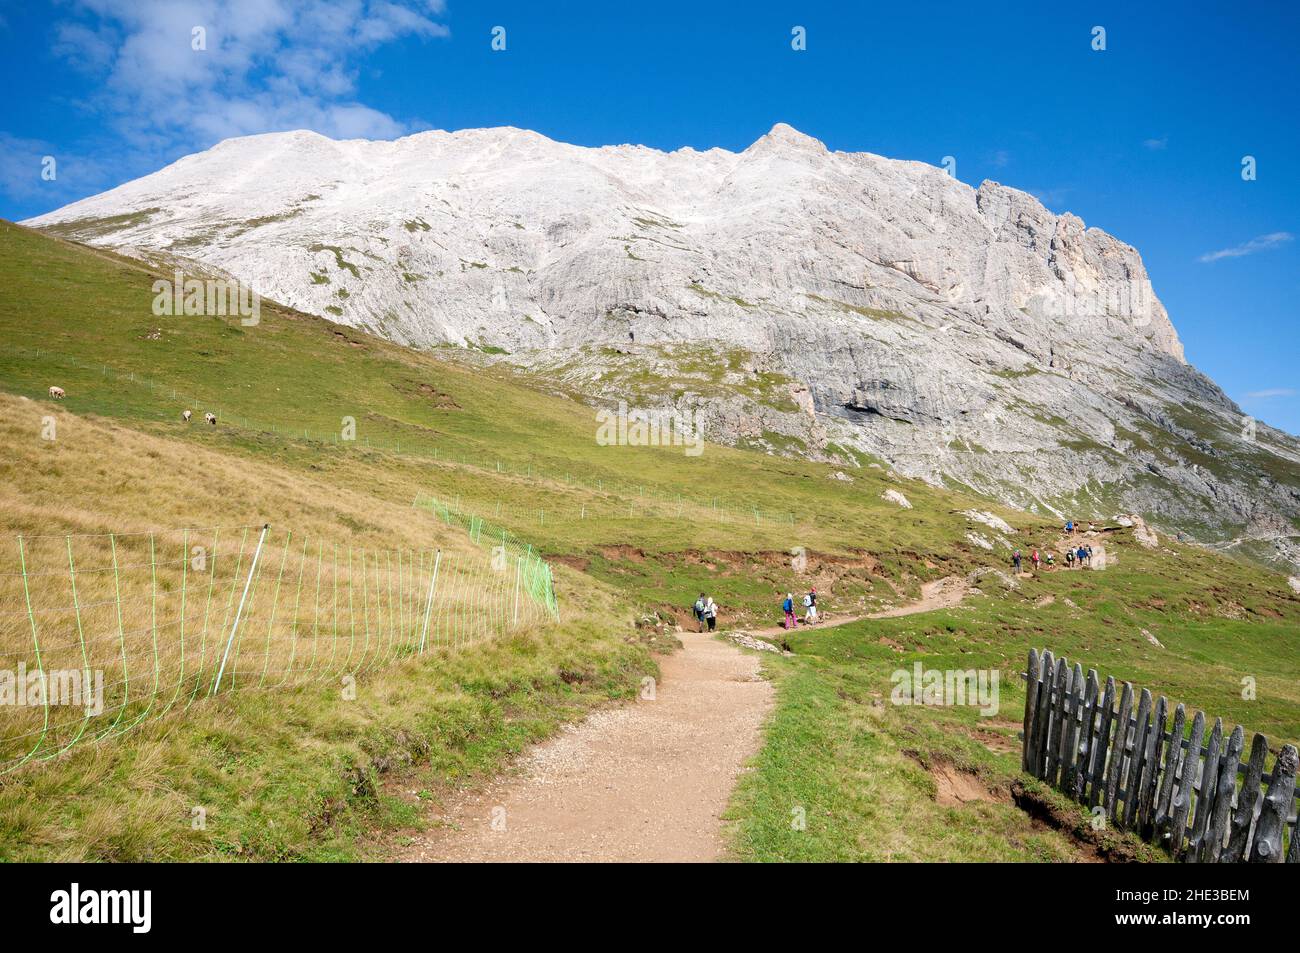 View of Sassopiatto mountain, Dolomites, Trentino-Alto Adige, Italy Stock Photo